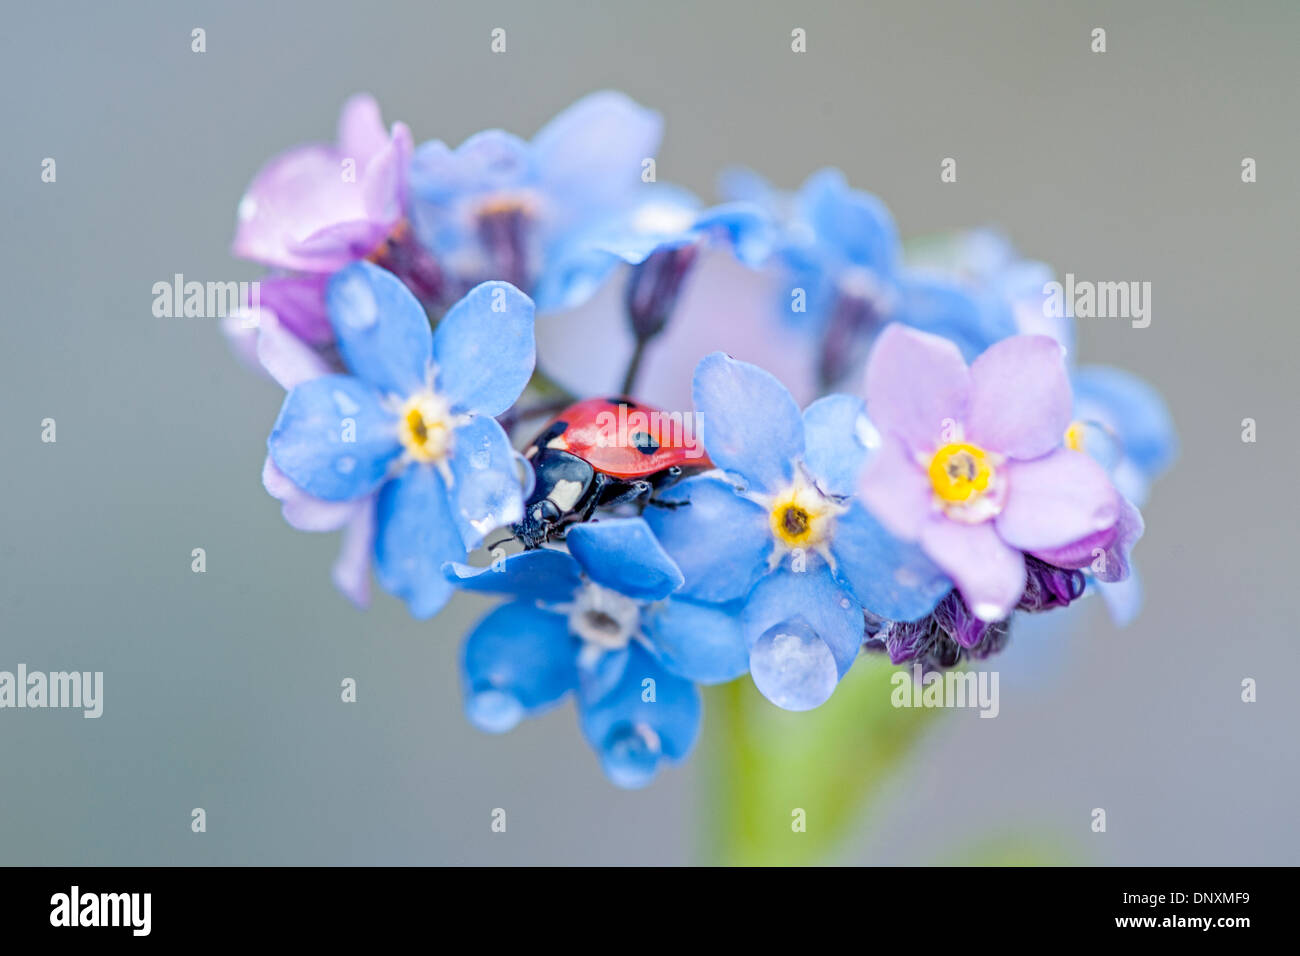 Nahaufnahme der zarten blauen Vergiss mich nicht Blumen - Myosotis mit einem Marienkäfer ruhen in den Blumen Stockfoto